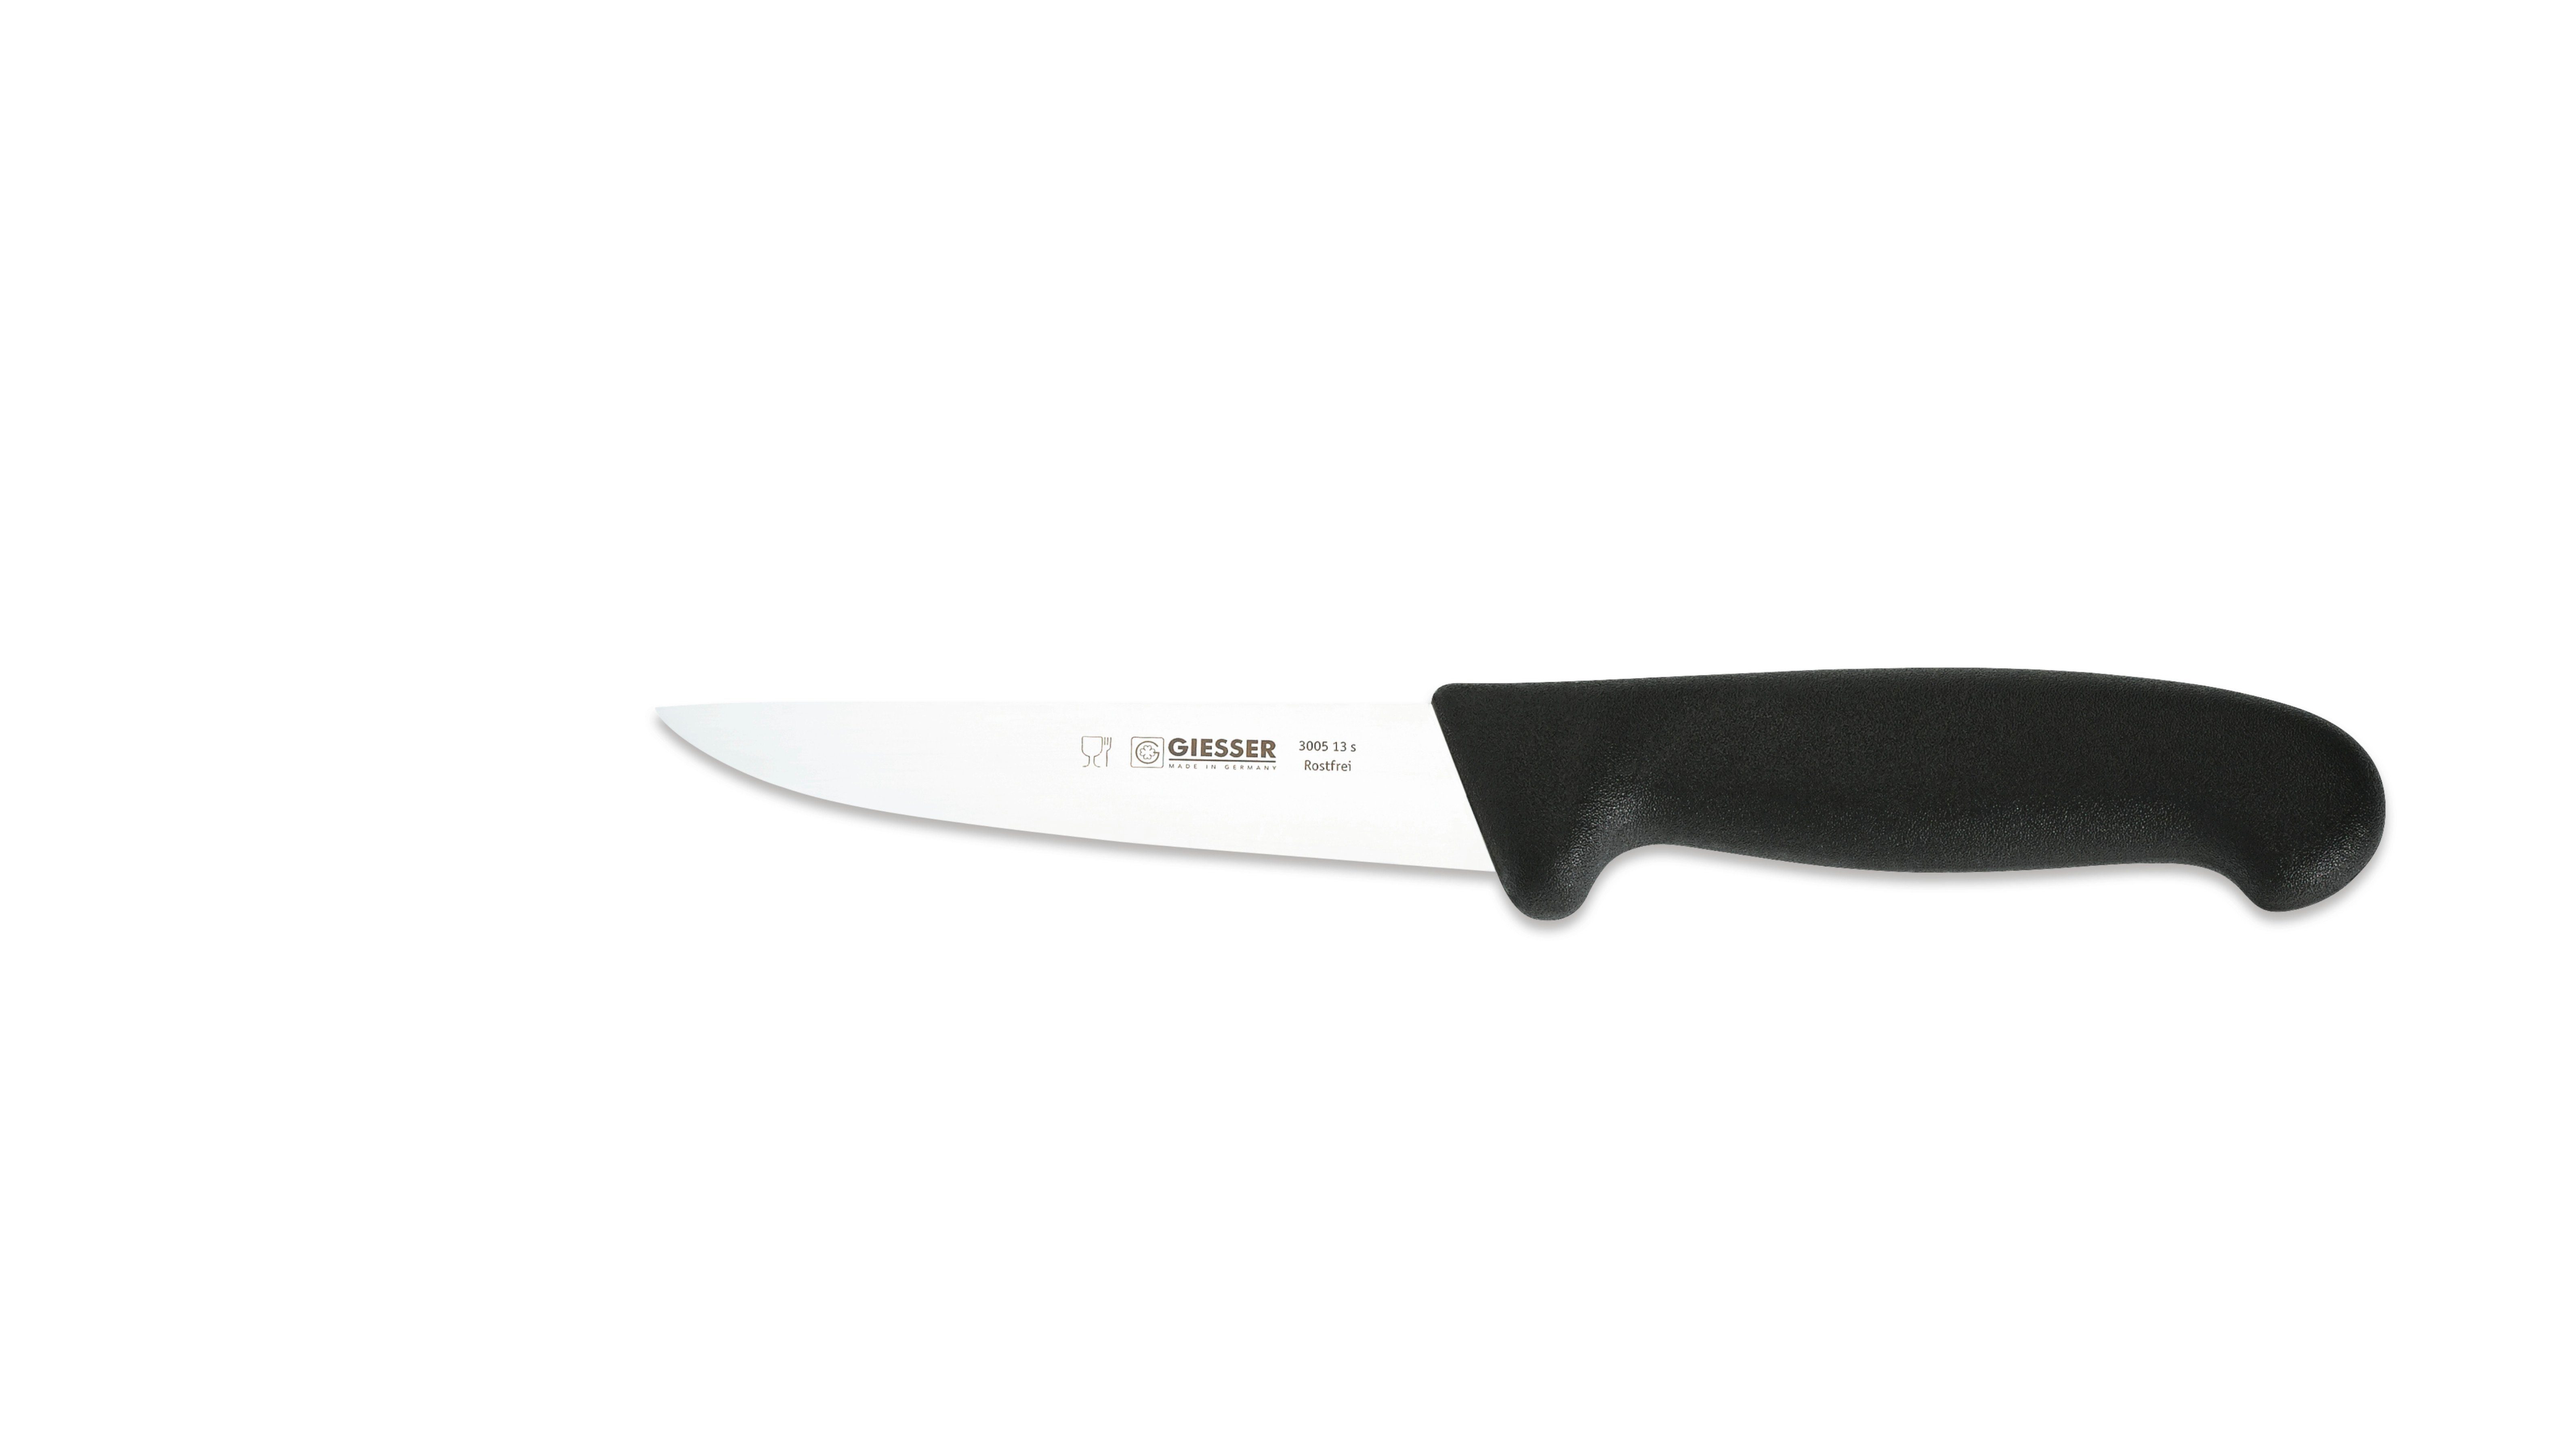 Schwarz Ideal Stechmesser 13-30, Messer Fleischer 3005 starke, Klinge, Ausbeinmesser gerade für Giesser